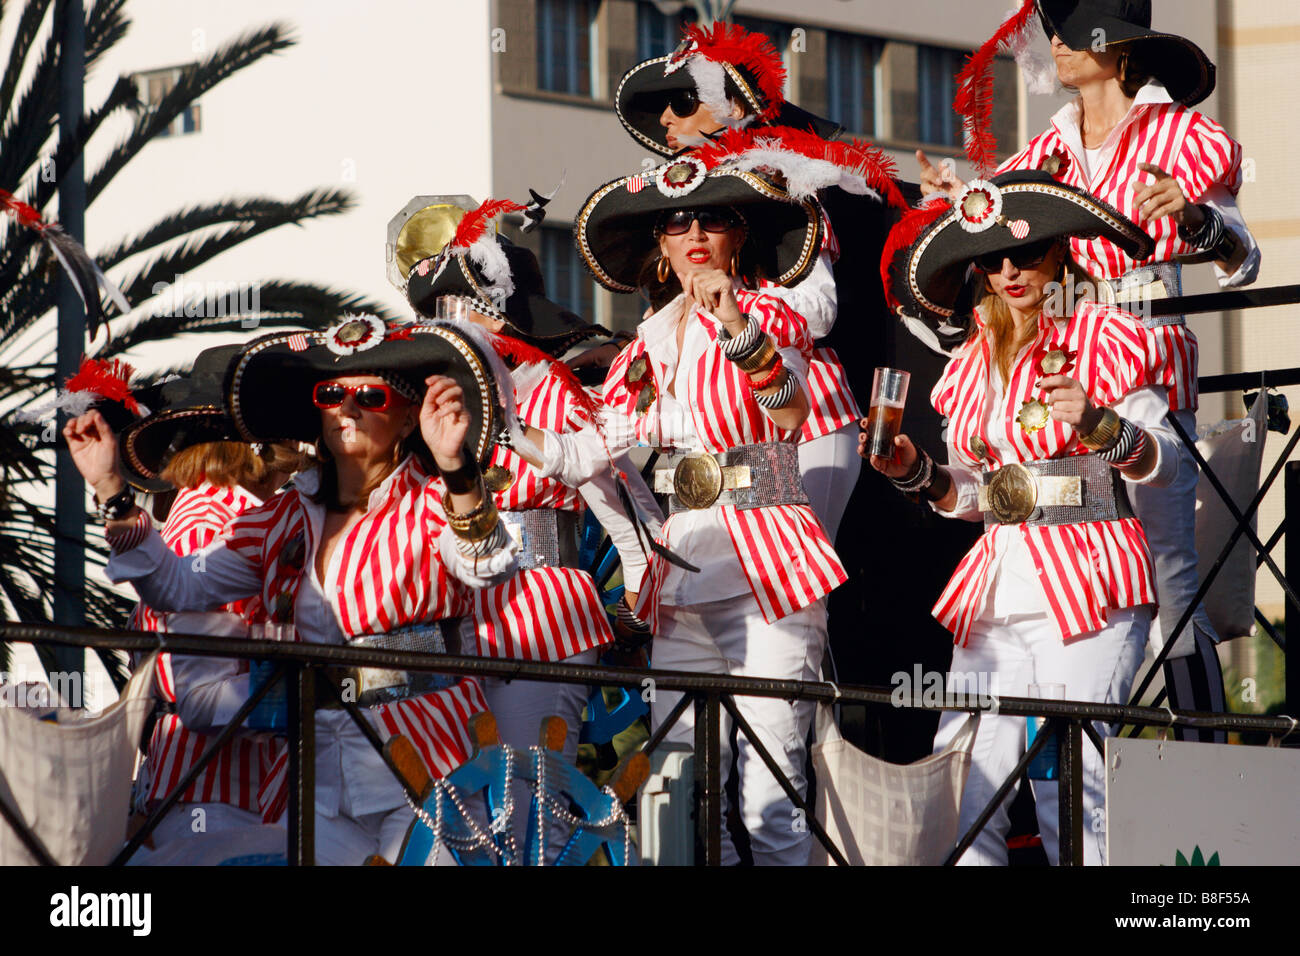 Spanische Frauen im Kostüm auf der 2009 Las Palmas Karneval auf Gran Canaria. Das Thema Karneval war Piraten. Stockfoto